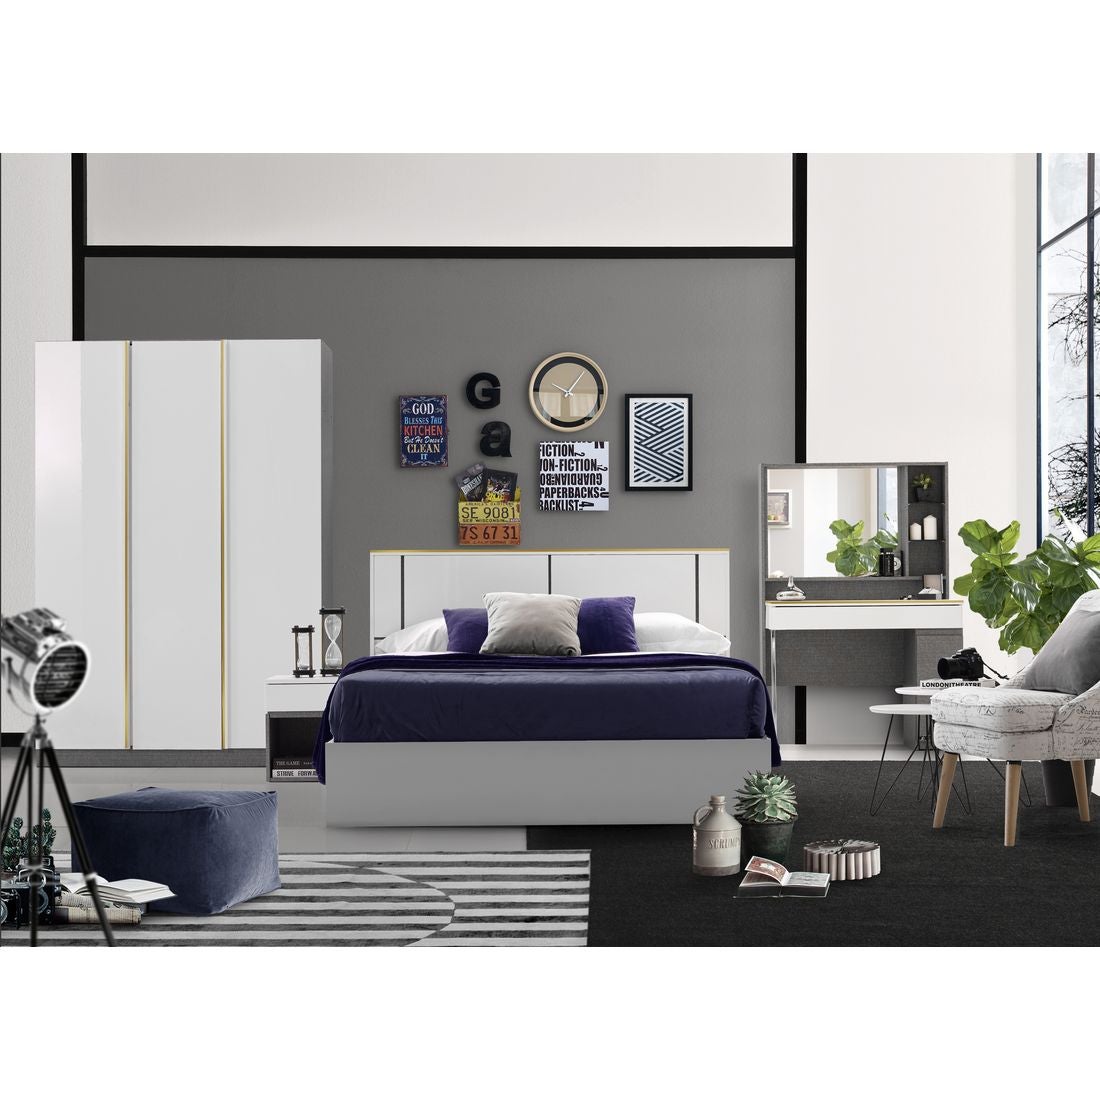 59022010-element-furniture-bedroom-furniture-bedroom-sets-31